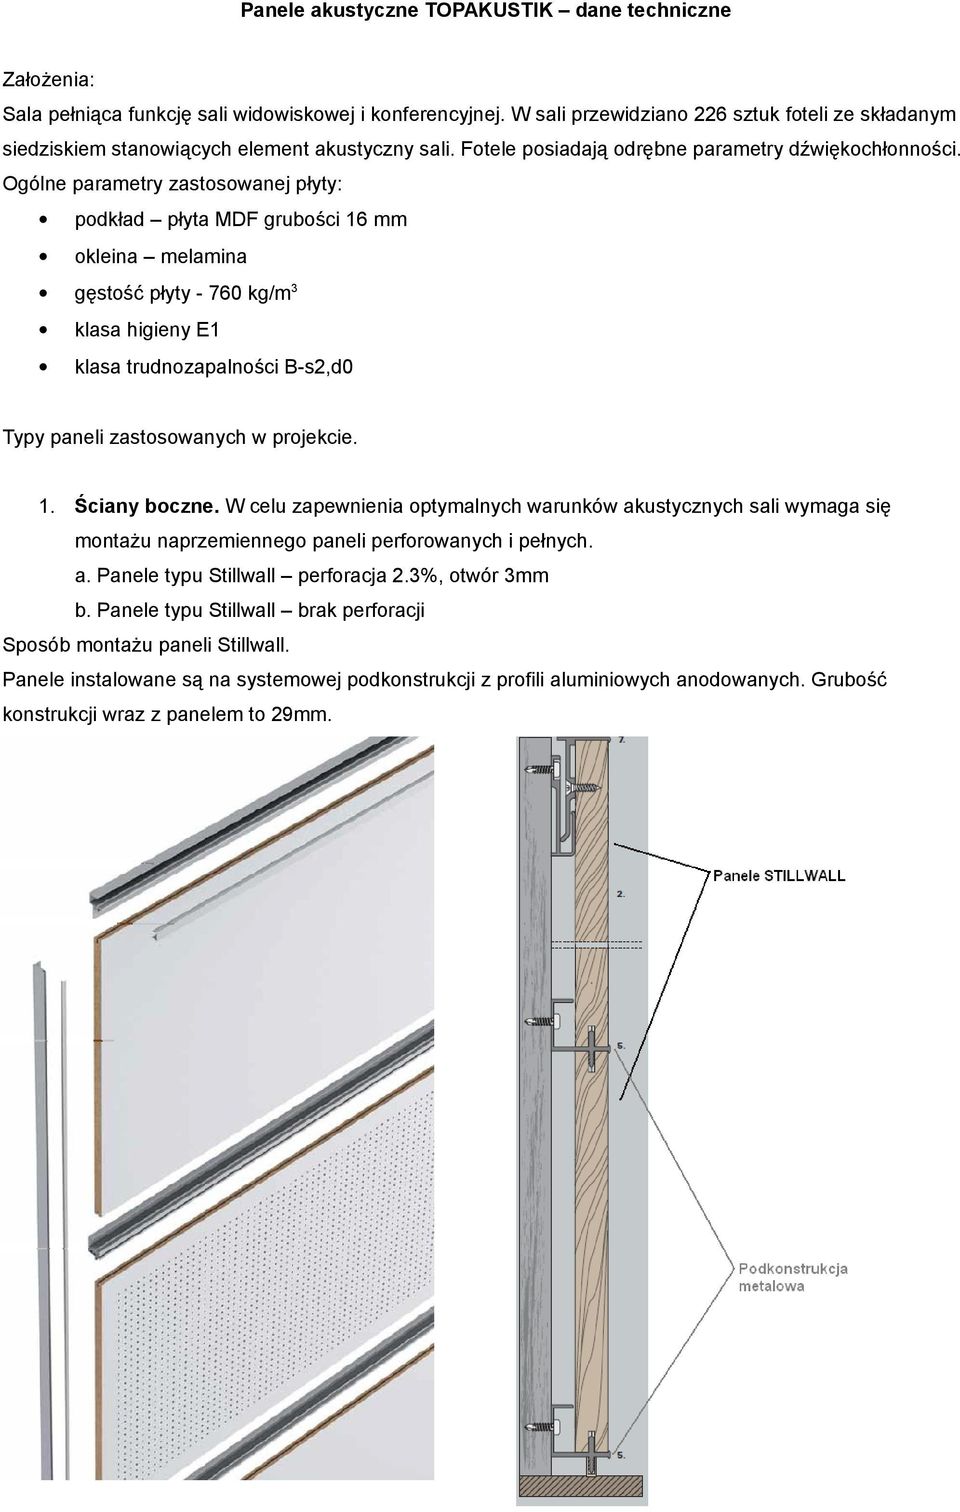 Ogólne parametry zastosowanej płyty: podkład płyta MDF grubości 16 mm okleina melamina gęstość płyty - 760 kg/m3 klasa higieny E1 klasa trudnozapalności B-s2,d0 Typy paneli zastosowanych w projekcie.